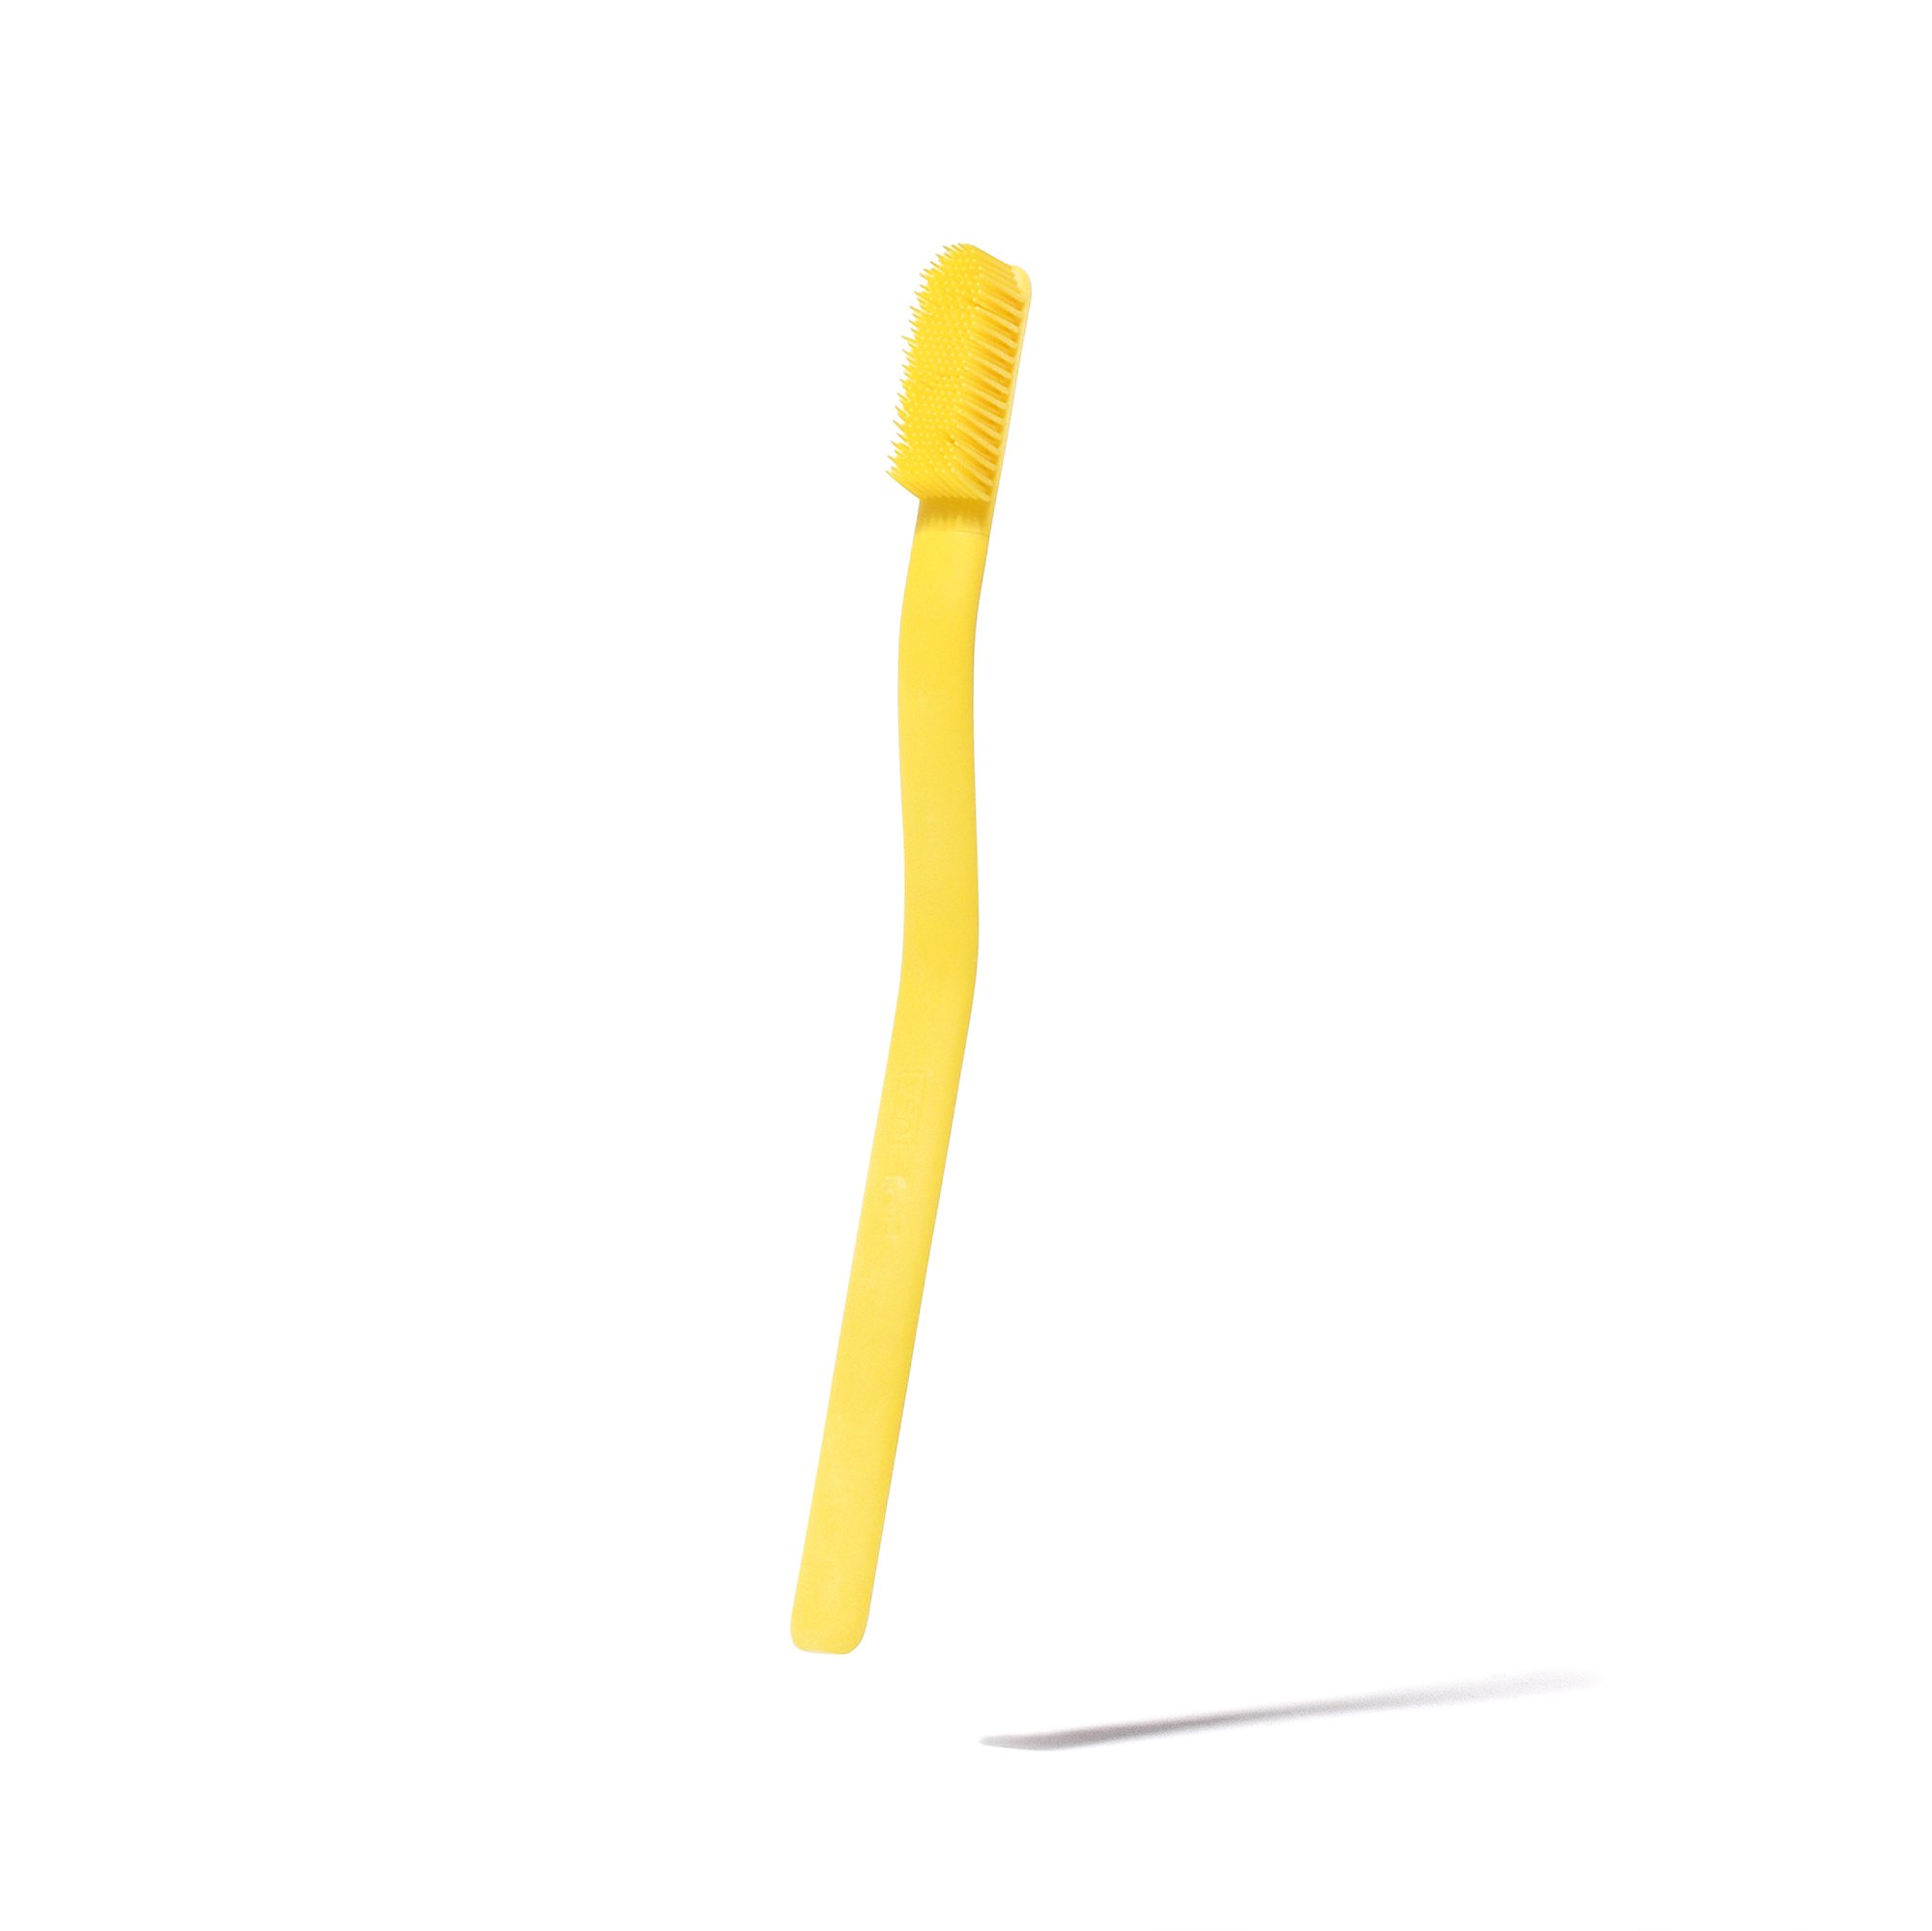 BoieUSA_Toothbrush_Yellow_Brighter.jpg